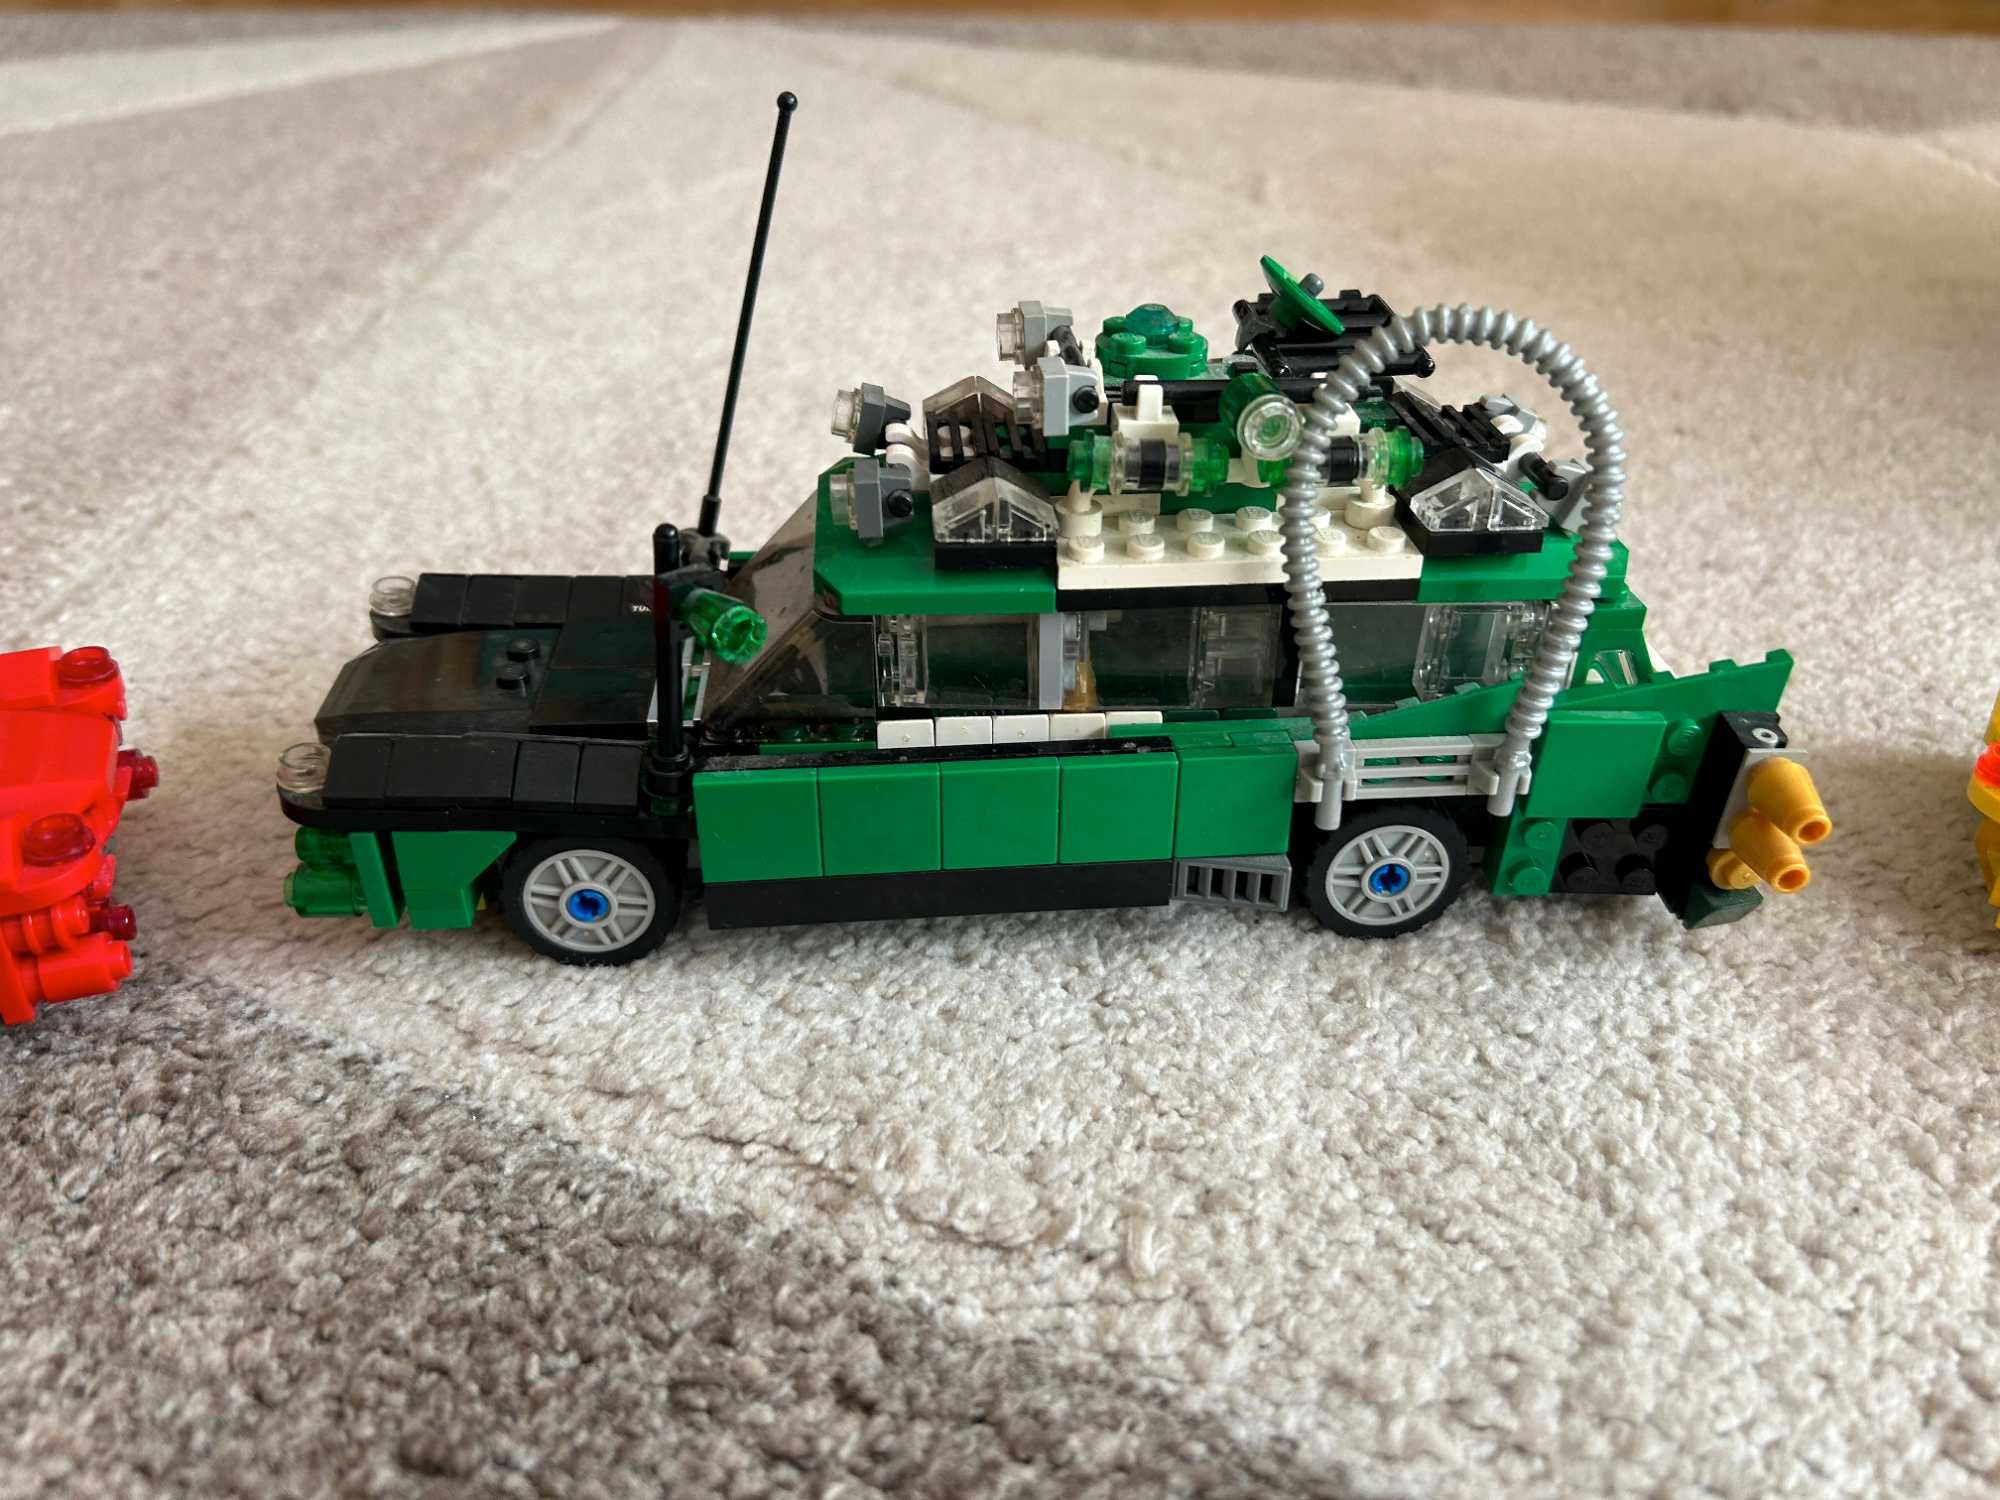 Lego 3 samochody wzorowane na zestawie Ghostbusters 21108